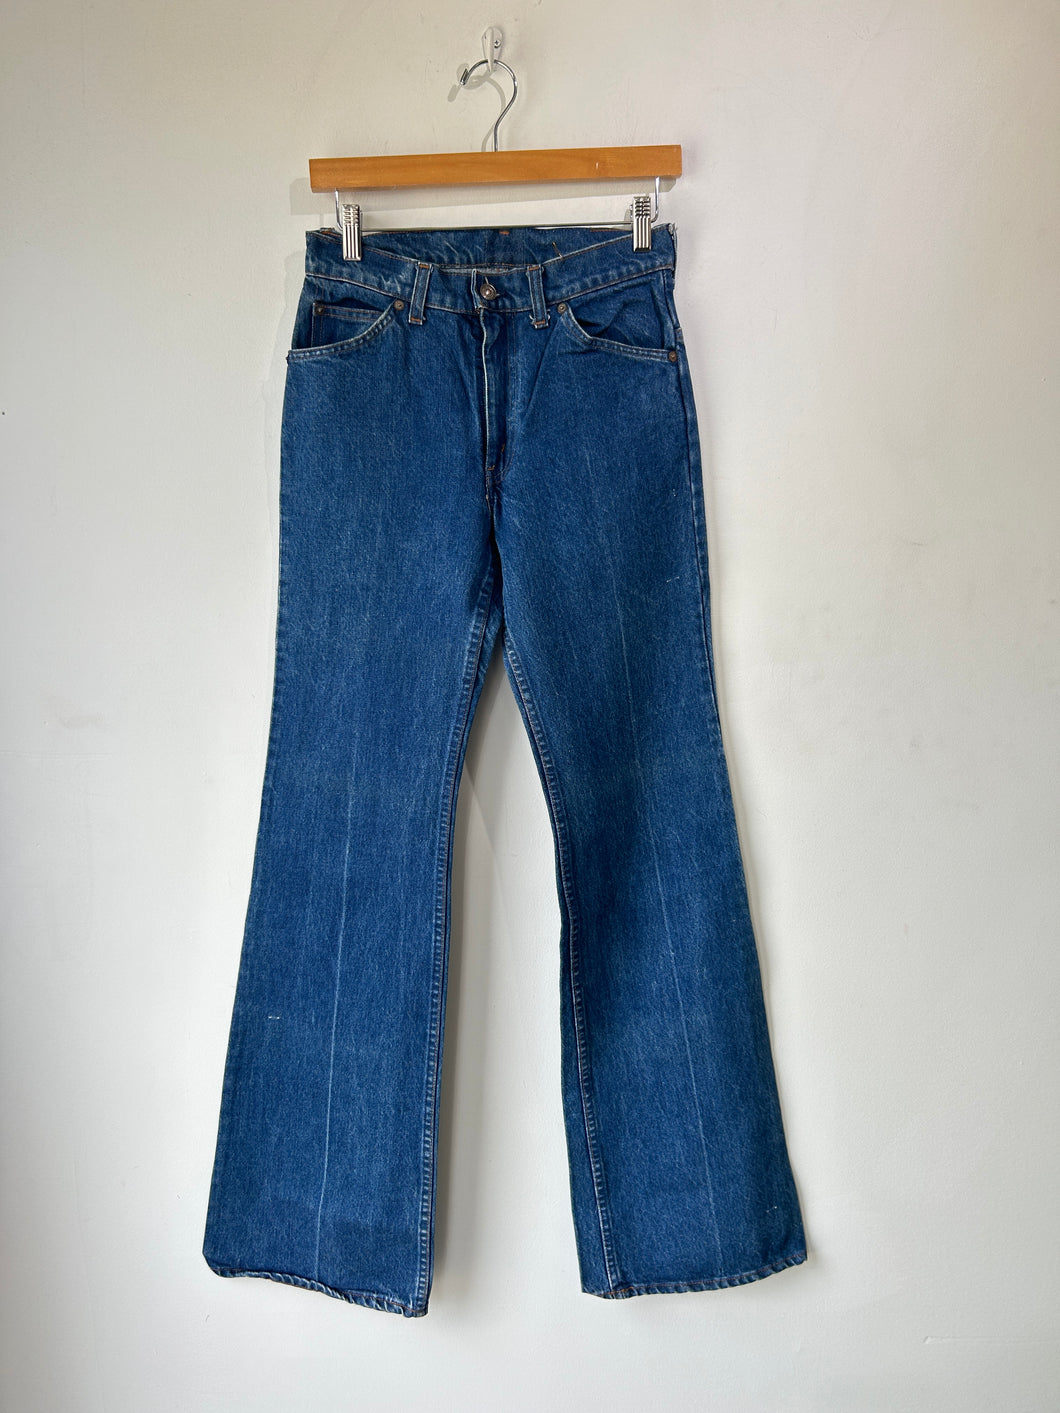 Vintage Orange Tab Levi's Jeans